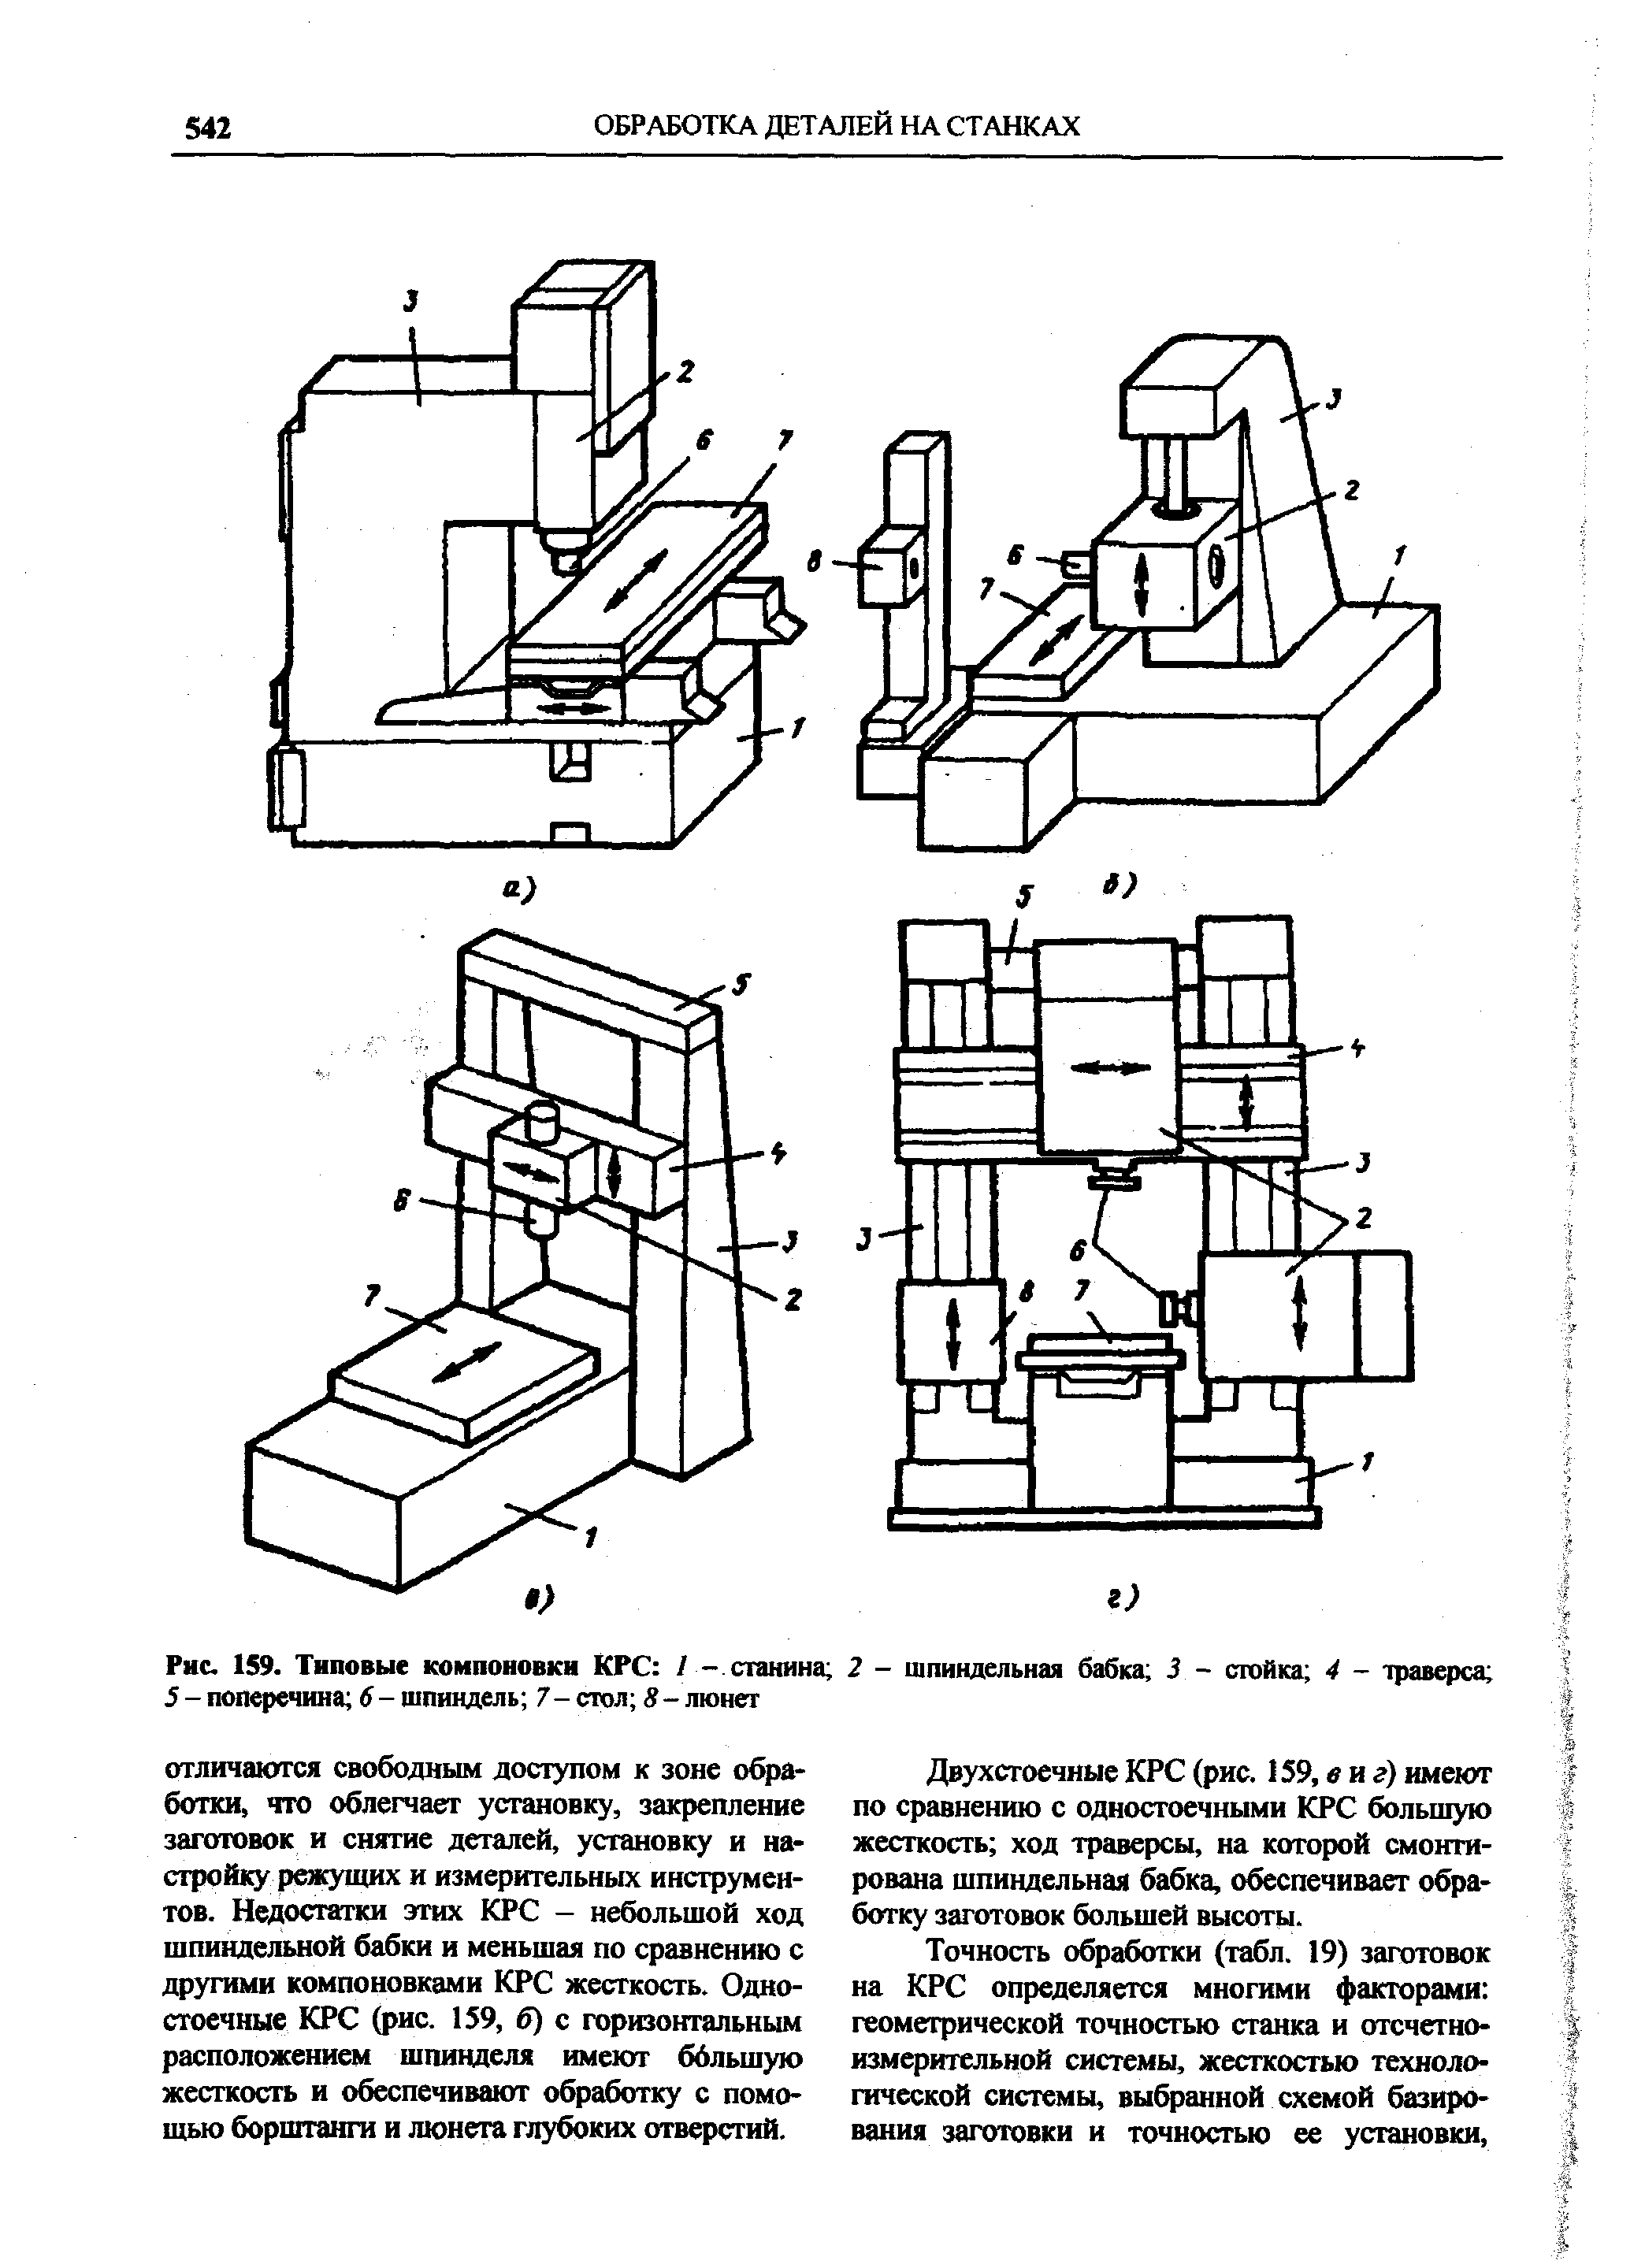 Рис. 159. Типовые компоновки КРС / - станина 2 - шпиндельная 5 - поперечина 6 - шпиндель 7- стол S - люнегг
